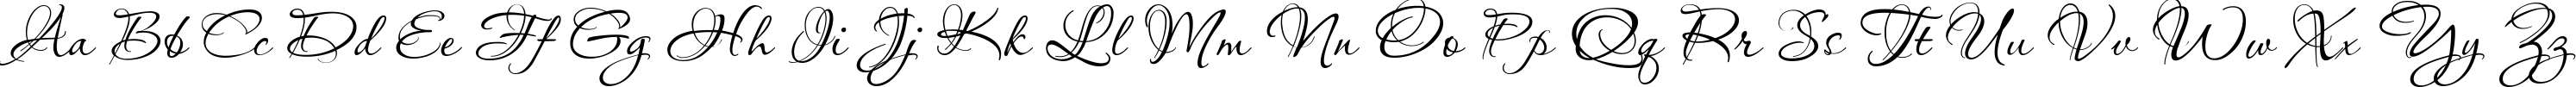 Пример написания английского алфавита шрифтом PassionsConflictROB